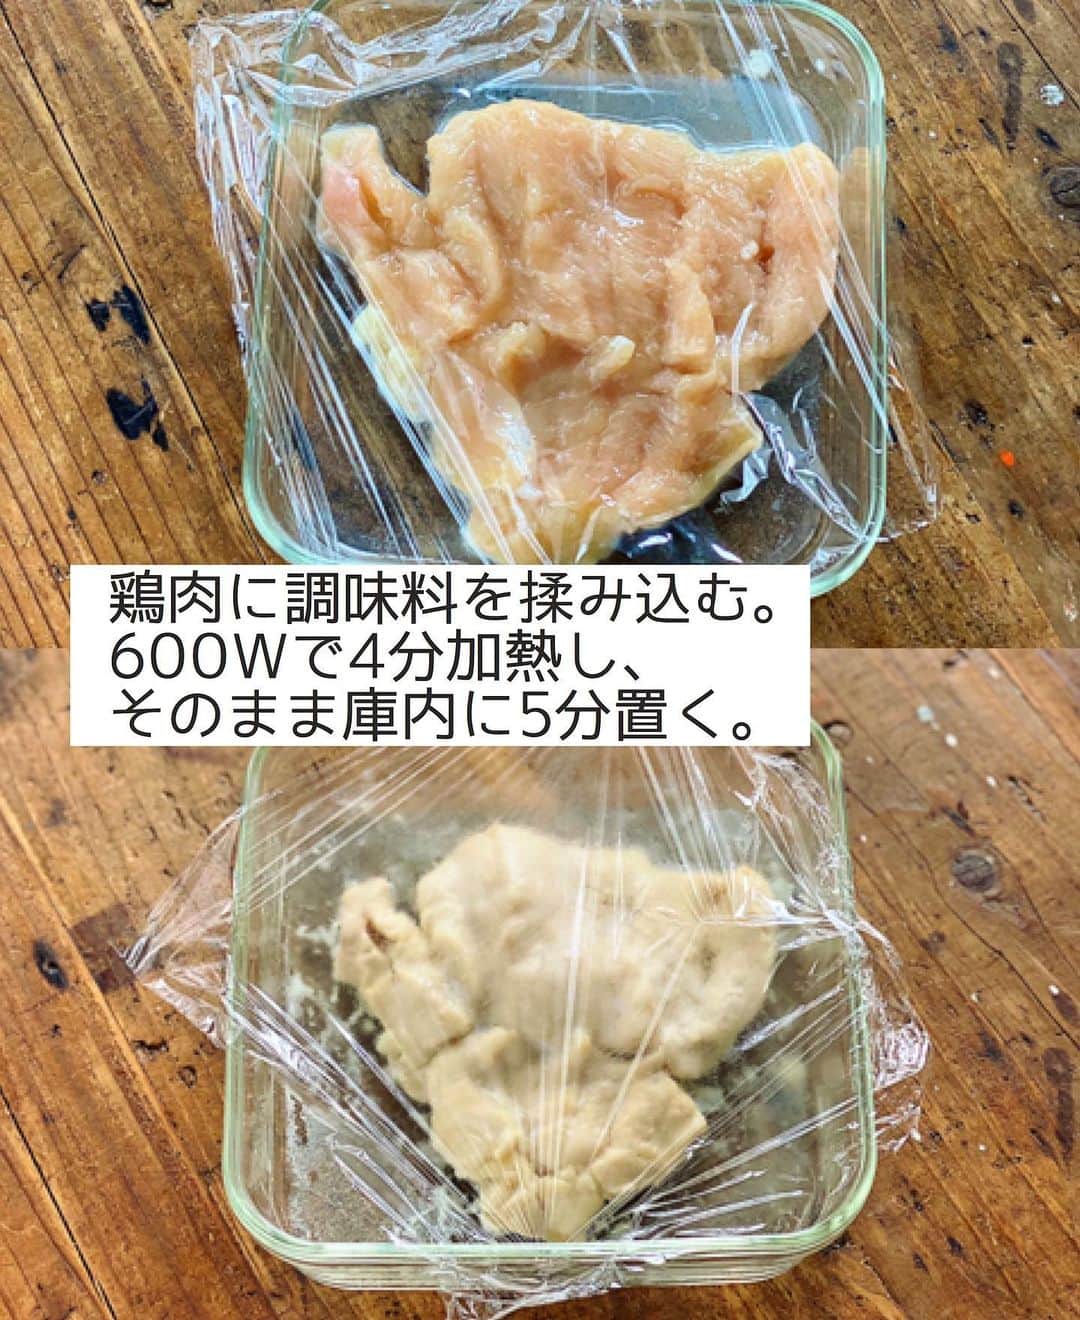 Mizuki【料理ブロガー・簡単レシピ】さんのインスタグラム写真 - (Mizuki【料理ブロガー・簡単レシピ】Instagram)「・﻿ 【レシピ】ーーーーーーーーーーーー﻿ ♡レンジde簡単！蒸し鶏きゅうり♡﻿ ーーーーーーーーーーーーーーーーー﻿ ﻿ ﻿ ﻿ おはようございます(*^^*)﻿ ﻿ 今日ご紹介させていただくのは﻿ レンジで作る蒸し鶏きゅうり♩﻿ 冷蔵庫で3〜4日保存可能で﻿ 作り置きにもぴったりですよ♡﻿ ﻿ 作り方は超簡単(*´艸`)﻿ 蒸し鶏はレンジで一発！﻿ 余熱で火を通すことで﻿ しっとり柔らかく仕上がります♩﻿ ﻿ ﻿ ﻿ ーーーーーーーーーーーーーーーーーーーー﻿ 【作りやすい量】﻿ 鶏むね肉...小1枚(200g)﻿ ●砂糖...小1/2﻿ ●塩...小1/4﻿ ●酒...大1﻿ きゅうり...1本﻿ ☆砂糖・酢・醤油・ごま...各大1﻿ ☆ごま油...小1﻿ ﻿ 1.鶏肉は身の厚い部分を開いて耐熱容器に入れ、●を上から順番に揉み込む。ふんわりラップをかけ、600Wのレンジで4分加熱し、そのまま庫内に5分置いて火を通す。﻿ 2.きゅうりは細切りにする。1の粗熱が取れたら手で割く。﻿ 3.☆を混ぜ合わせ、2を加えて和える。﻿ ーーーーーーーーーーーーーーーーーーーー﻿ ﻿ ﻿ ﻿ 《ポイント》﻿ ♦︎鶏肉は厚みが均等になるように開いて下さい♩﻿ ♦︎蒸し鶏を割いた後、蒸し汁に浸けて吸わせるとよりしっとりします♩﻿ ♦︎冷蔵庫で3〜4日保存できます♩﻿ ﻿ ﻿ ﻿ ﻿ ﻿ ﻿ ﻿ お久しぶりです🙇‍♀️﻿ おかげさまで無事撮影が終わり﻿ 今日から復帰しました〜✨﻿ 撮影後は浦島太郎な気分ですが(笑)﻿ またどうぞお付き合い下さいませ♩﻿ ﻿ それからお休みの間も﻿ タグ付けやストーリーなど﻿ 本当にありがとうございました🥺💓﻿ ﻿ ﻿ ﻿ ﻿ ﻿ ﻿ ＿＿＿＿＿＿＿＿＿＿＿＿＿＿＿＿＿﻿ 🎀6刷重版しました🎀﻿ 混ぜて焼くだけ。はじめてでも失敗しない！﻿ 【#ホットケーキミックスのお菓子 】﻿ ﻿ 一冊まるっとホケミスイーツ♩﻿ 普段のおやつから﻿ 特別な日にも使えるレシピを﻿ この一冊に詰め込みました(*^^*)﻿ ホットケーキミックスを使えば﻿ 簡単に本格的なお菓子が作れますよ♡﻿ ＿＿＿＿＿＿＿＿＿＿＿＿＿＿＿＿＿﻿ ﻿ ﻿ ﻿ ＿＿＿＿＿＿＿＿＿＿＿＿＿＿＿＿＿＿＿﻿ 📕6刷重版しました📕﻿ 簡単・時短！ 毎日のごはんがラクになる﻿ ✨🦋 【 #Mizukiの今どき和食 】🦋✨﻿ ＿＿＿＿＿＿＿＿＿＿＿＿＿＿＿＿＿＿＿﻿ なるべく少ない材料で﻿ 手間も時間も省きながら﻿ 簡単にできるおいしい和食レシピ♩﻿ 簡単に失敗なくマスターできる一冊で﻿ もっと気軽に、カジュアルに﻿ 和食を楽しんで下さいね(*^^*)﻿ ＿＿＿＿＿＿＿＿＿＿＿＿＿＿＿＿＿＿＿﻿ ﻿ ⭐️ストーリー、ハイライト、プロフ画面に﻿ 本のURLを貼らせていただいております♩﻿ →(@mizuki_31cafe )﻿ ﻿ ﻿ ﻿ ﻿ ﻿ #蒸し鶏#レンジ#きゅうり#作り置き#副菜#Mizuki#簡単レシピ#時短レシピ#節約レシピ#料理#レシピ#フーディーテーブル#マカロニメイト#おうちごはん#デリスタグラマー#料理好きな人と繋がりたい#おうちごはんlover#写真好きな人と繋がりたい#foodpic#cooking#recipe#lin_stagrammer#foodporn#yummy#蒸し鶏きゅうりm」8月2日 8時24分 - mizuki_31cafe